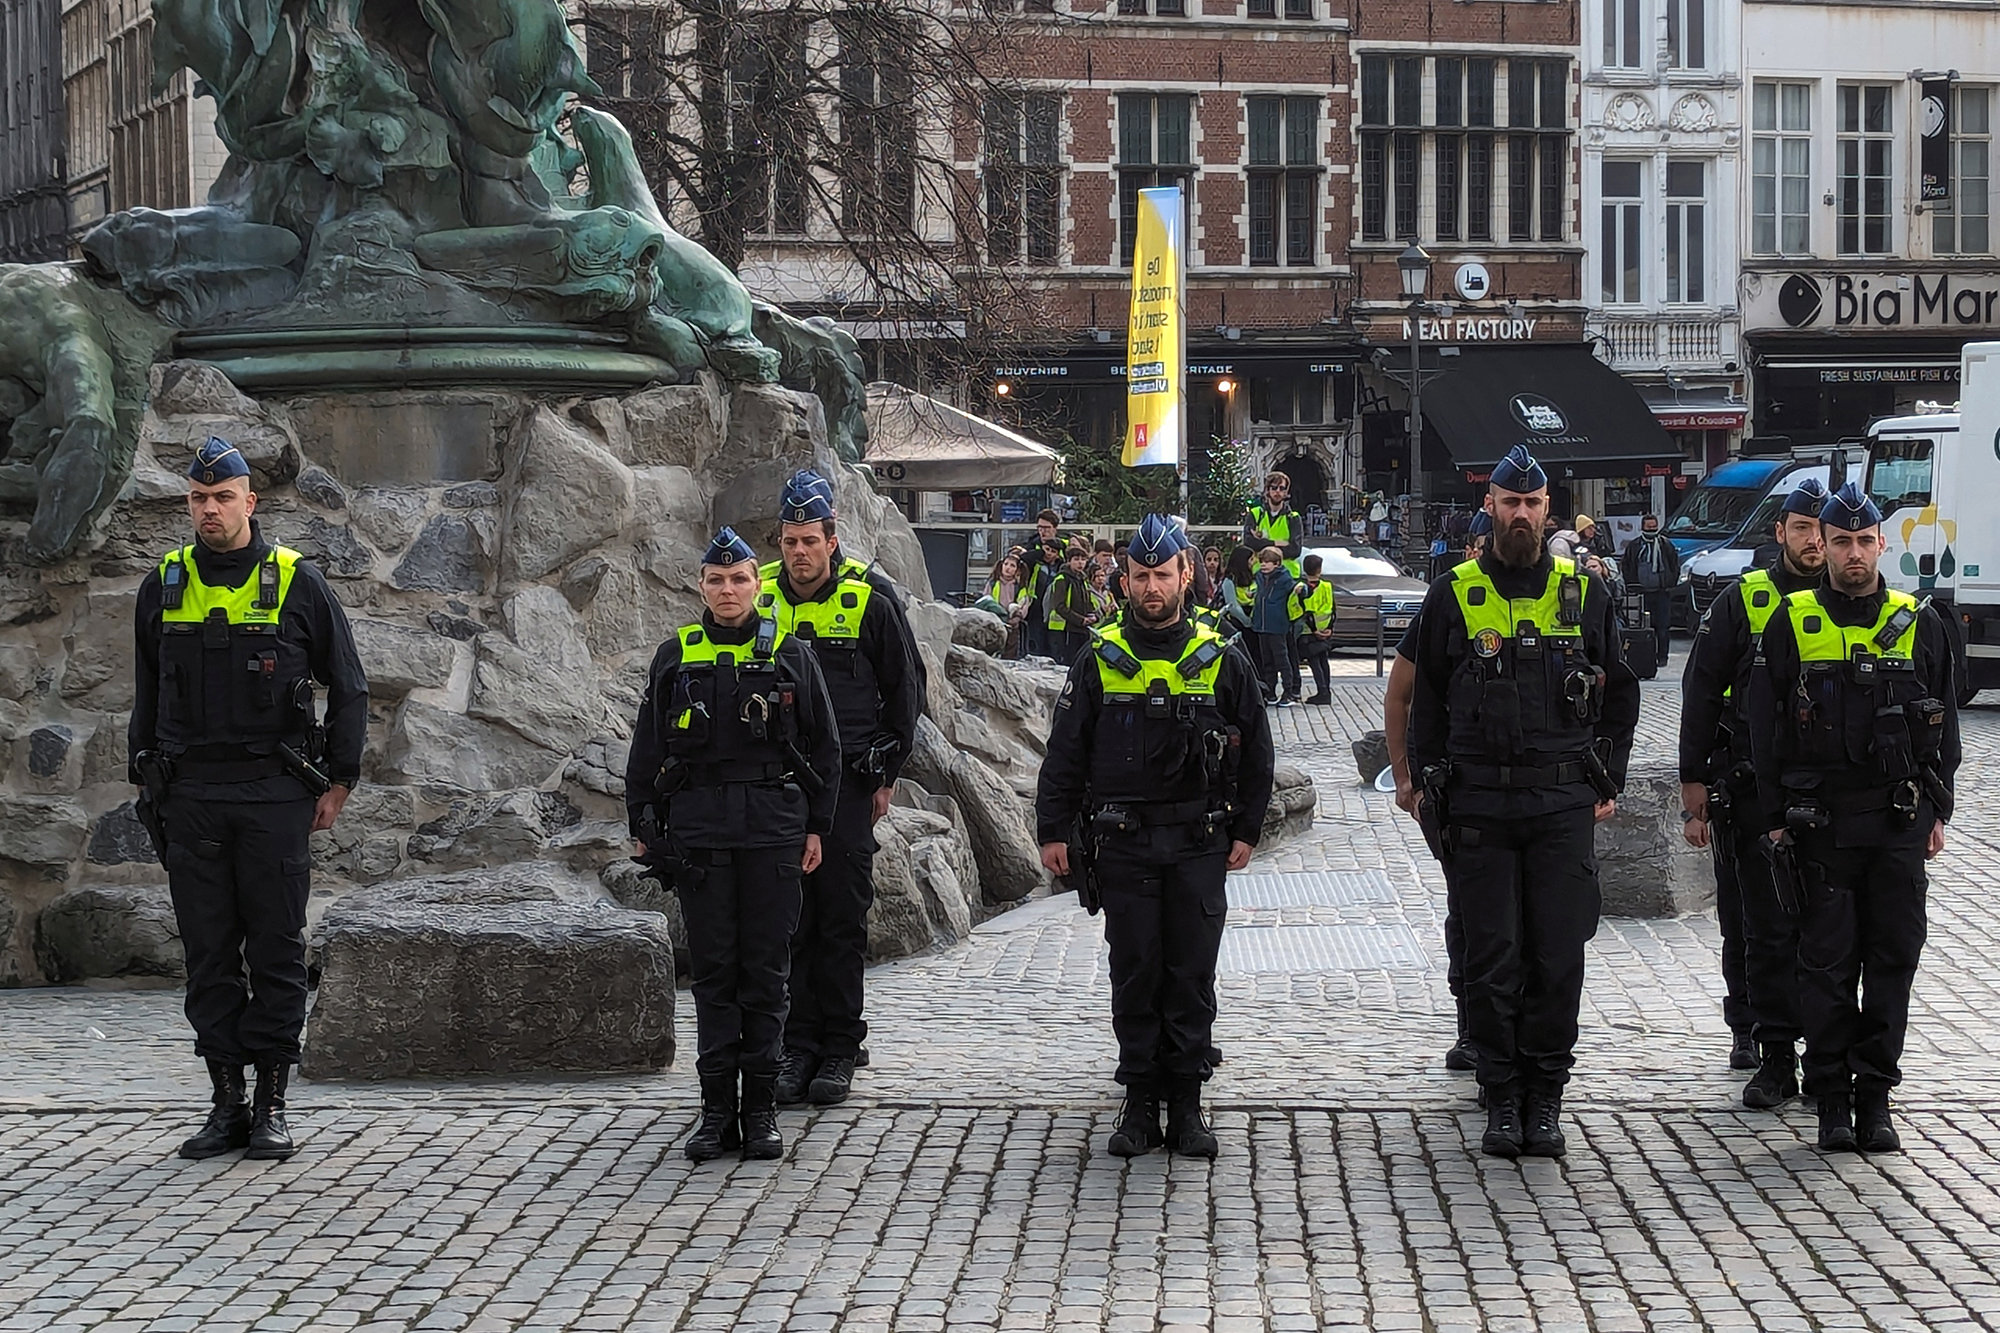 In Antwerpen haben Polizisten bereits am Mittwoch dem getöteten Kollegen bei einer Schweigeminute gedacht